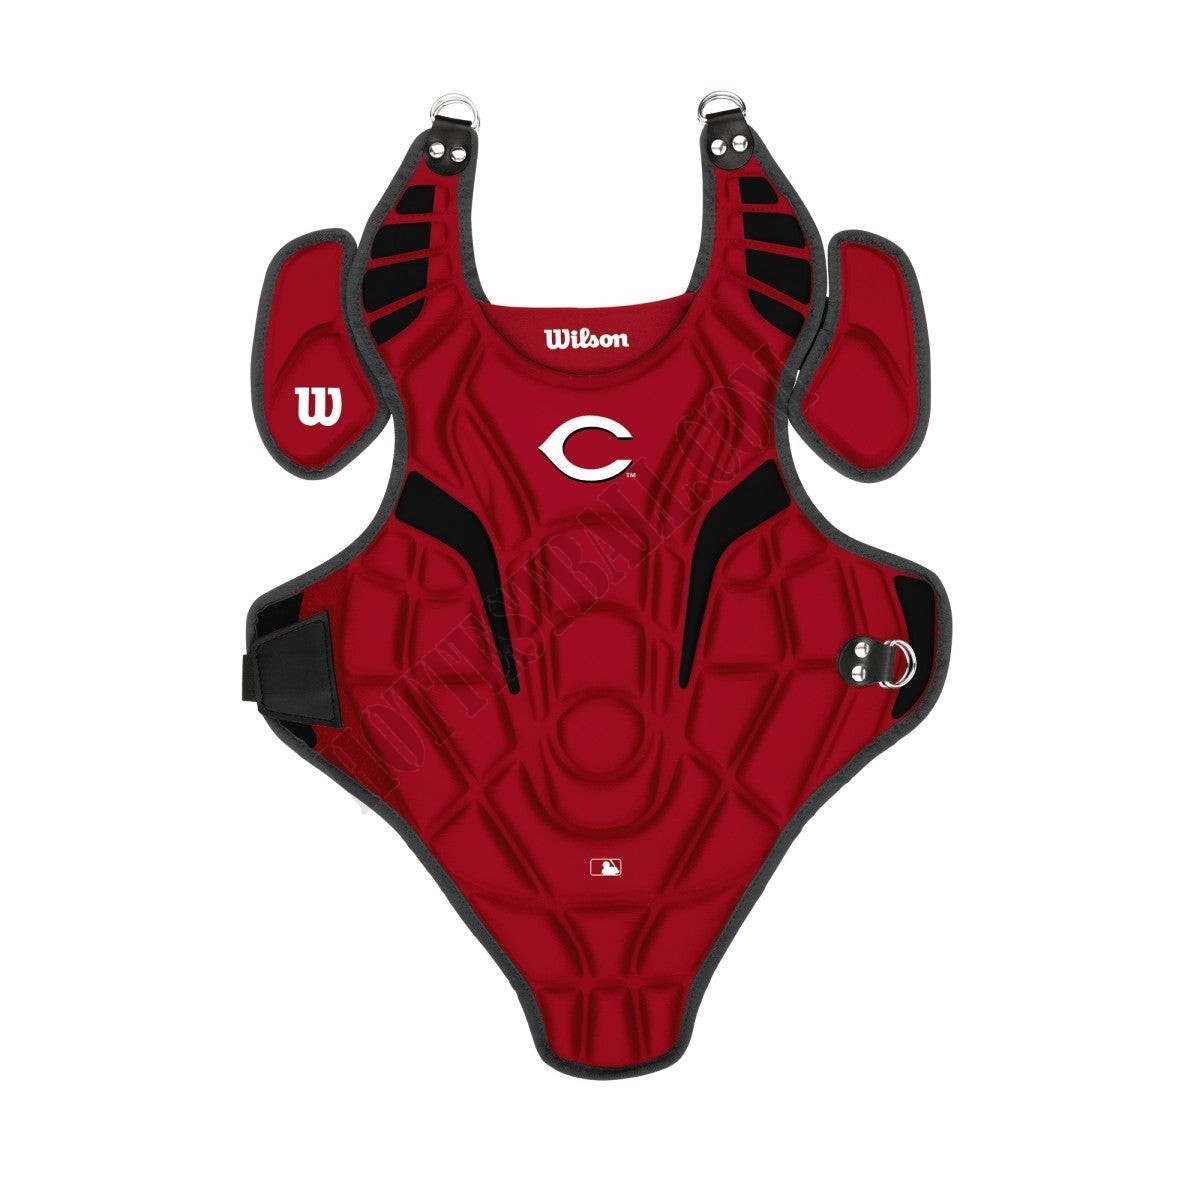 EZ Gear Catcher's Kit - Cincinnati Reds - Wilson Discount Store - EZ Gear Catcher's Kit - Cincinnati Reds - Wilson Discount Store